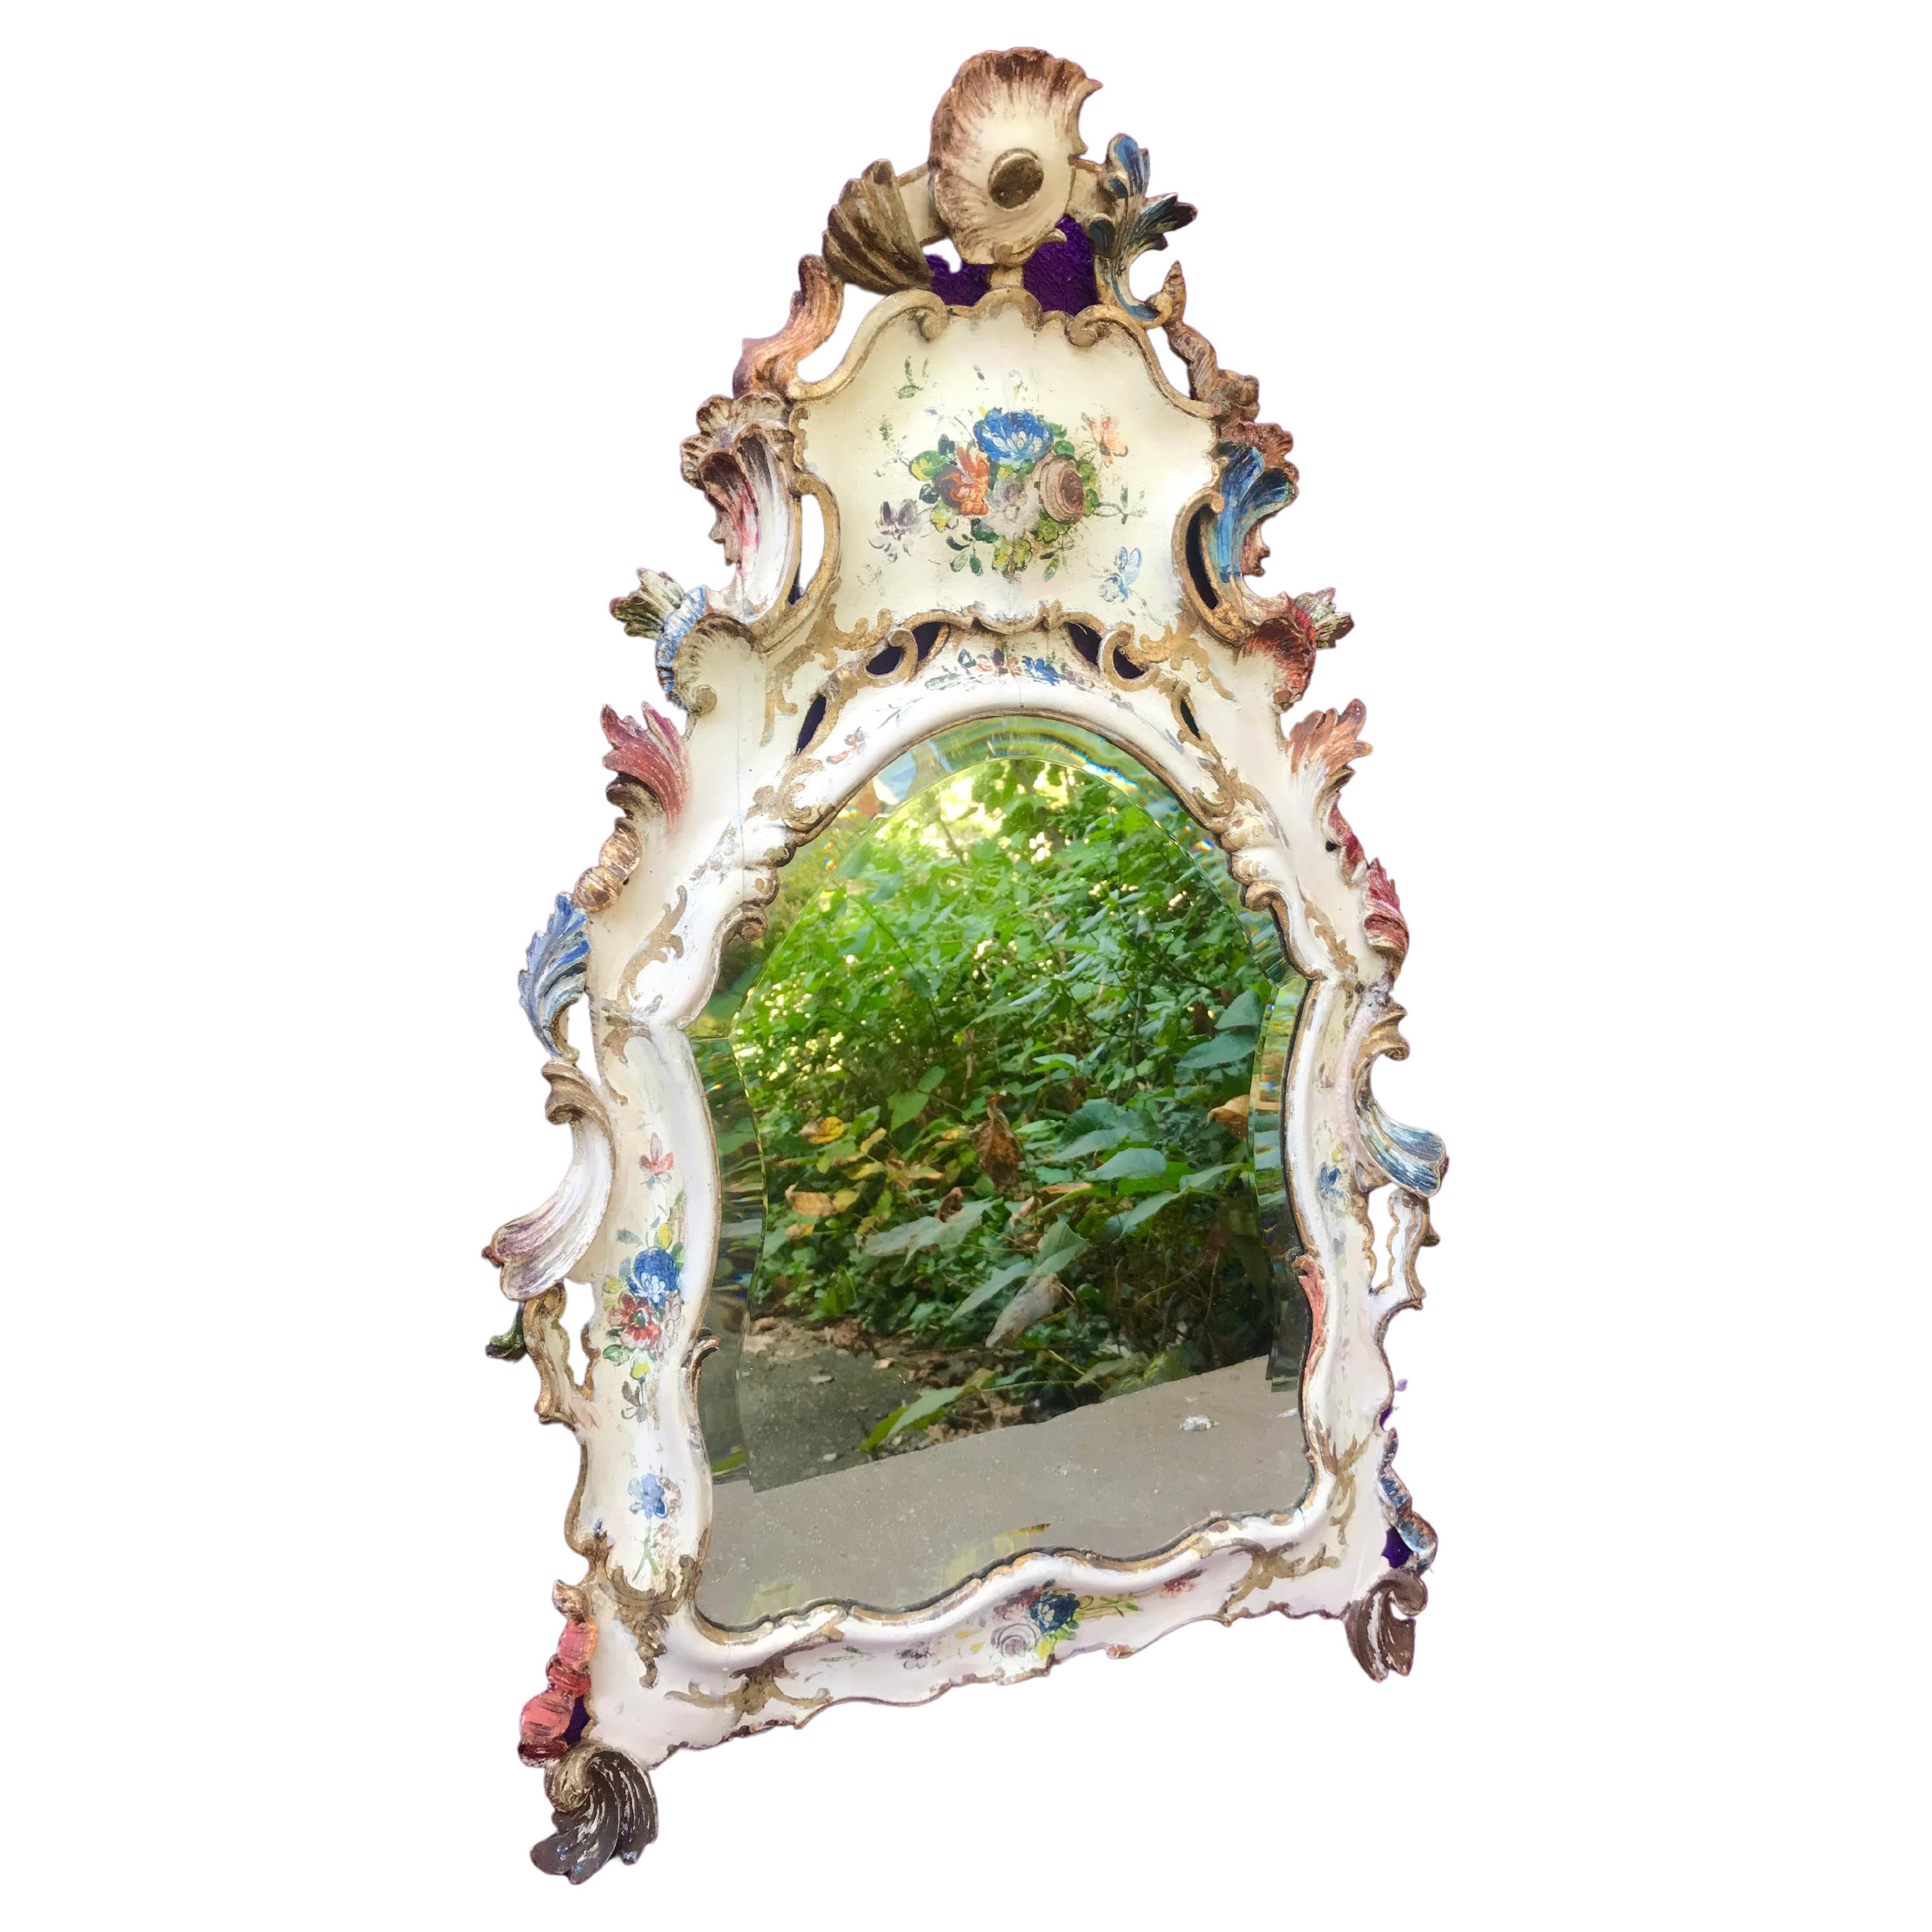 Miroir vénitien en forme de cartouche avec plaque de verre biseauté d'origine (quelques pertes dues à l'âge), bien usé de manière très charmante. Cadre en pin sculpté à la main et joint par des tendons. Cadre à décor floral peint et doré avec de